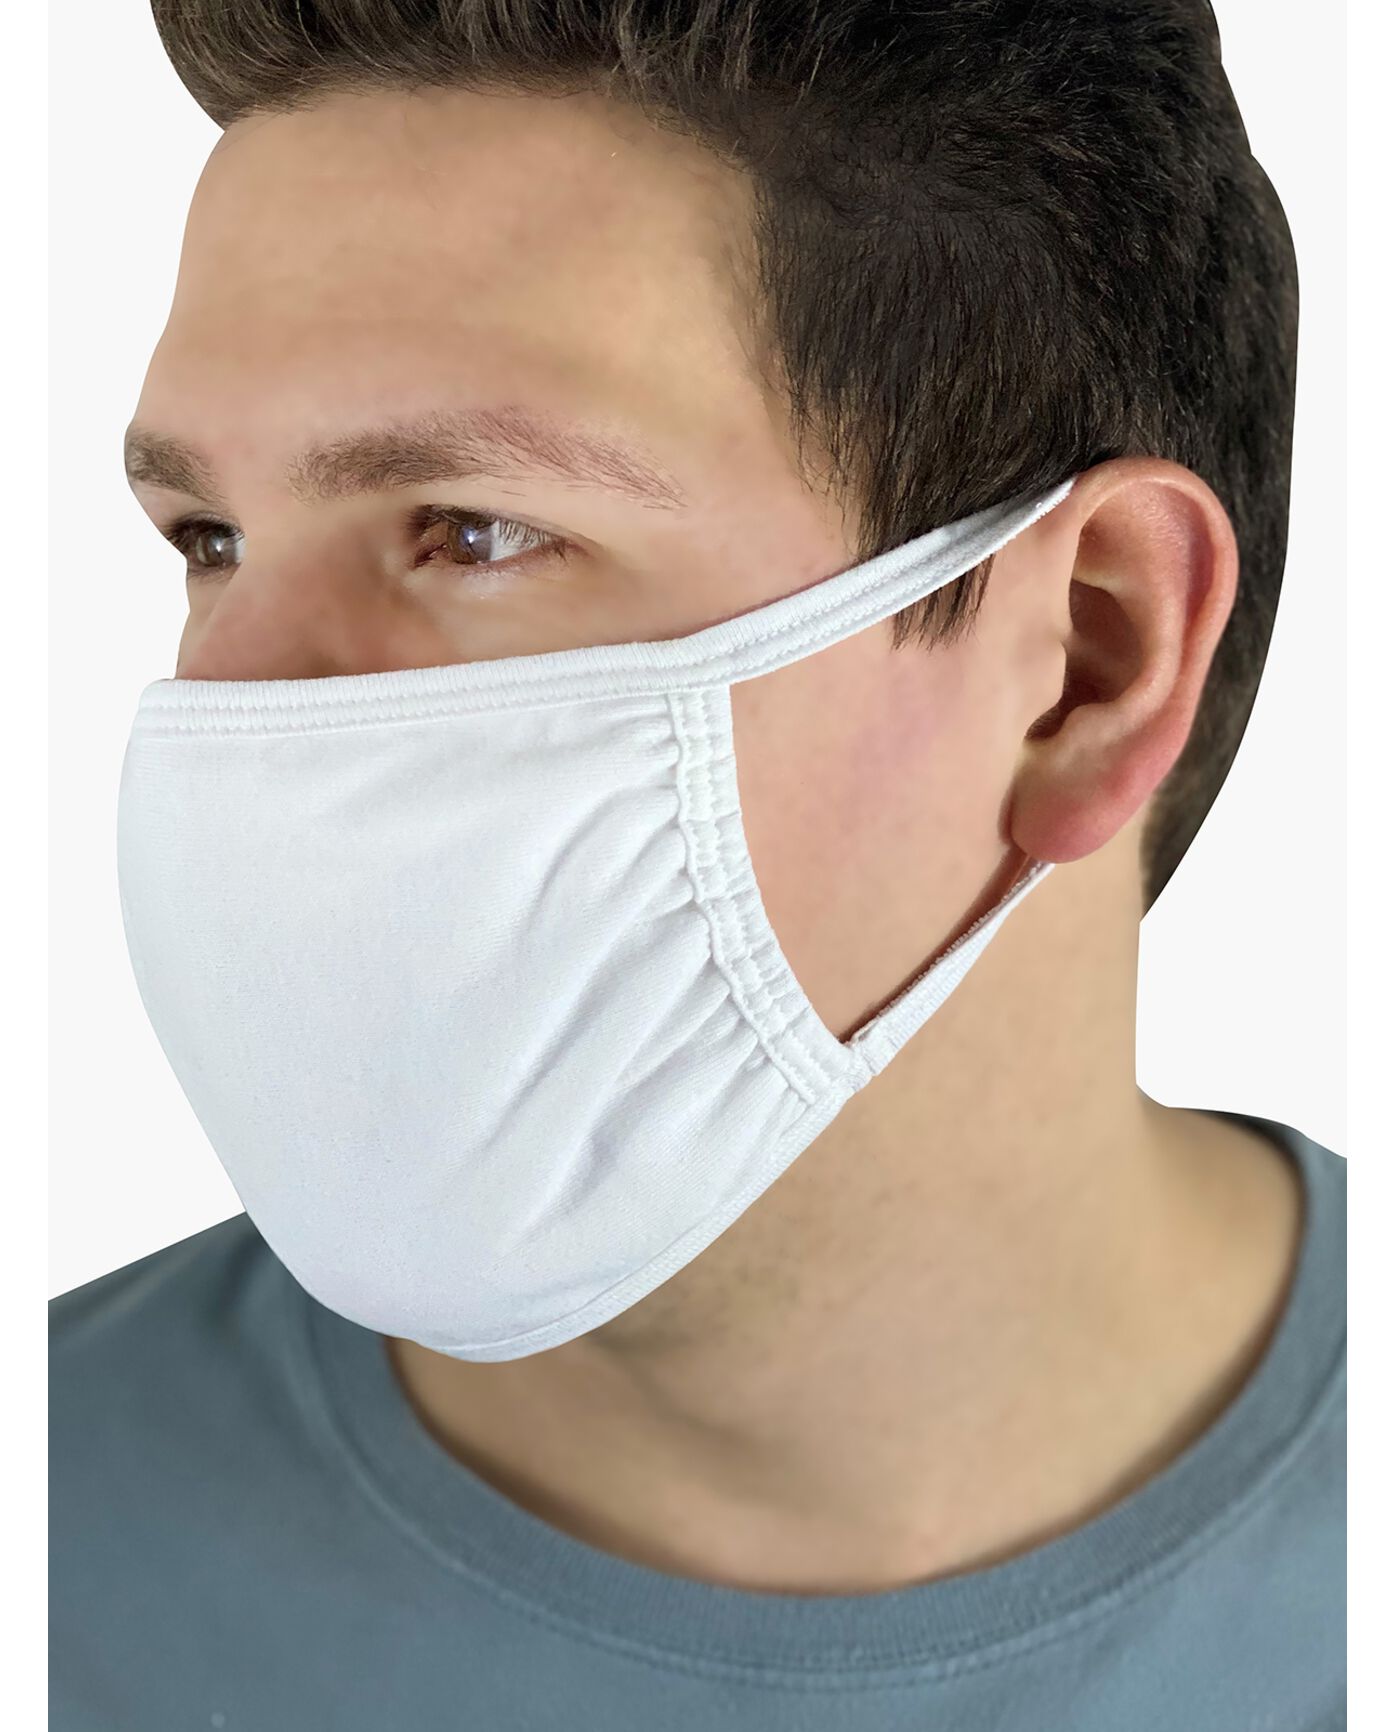 Reusable Cotton Face Mask Non-Medical, 5 Pack $1.25